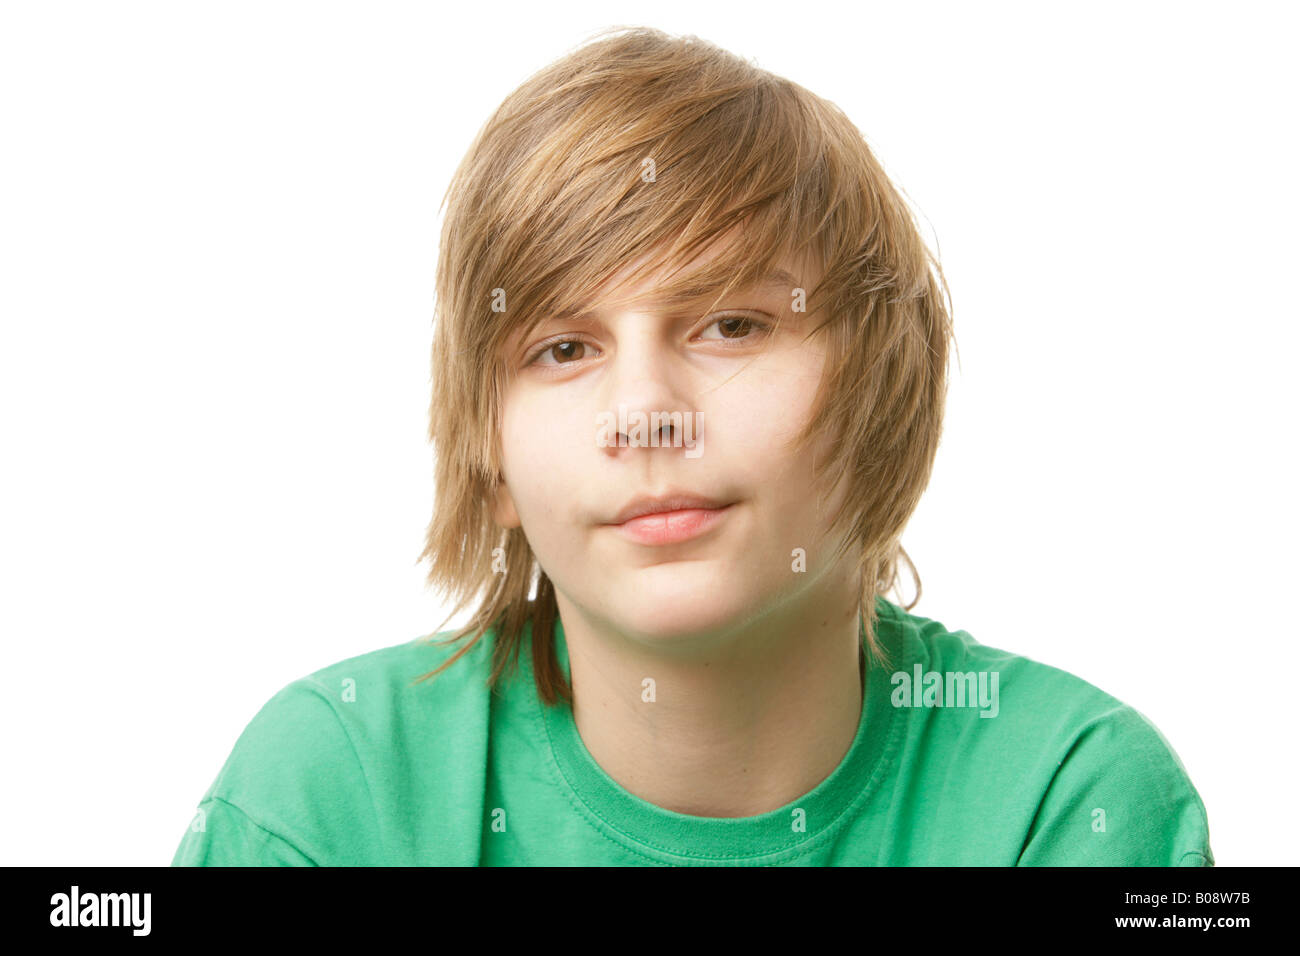 13-anno-vecchio ragazzo che indossa una maglietta verde Foto Stock